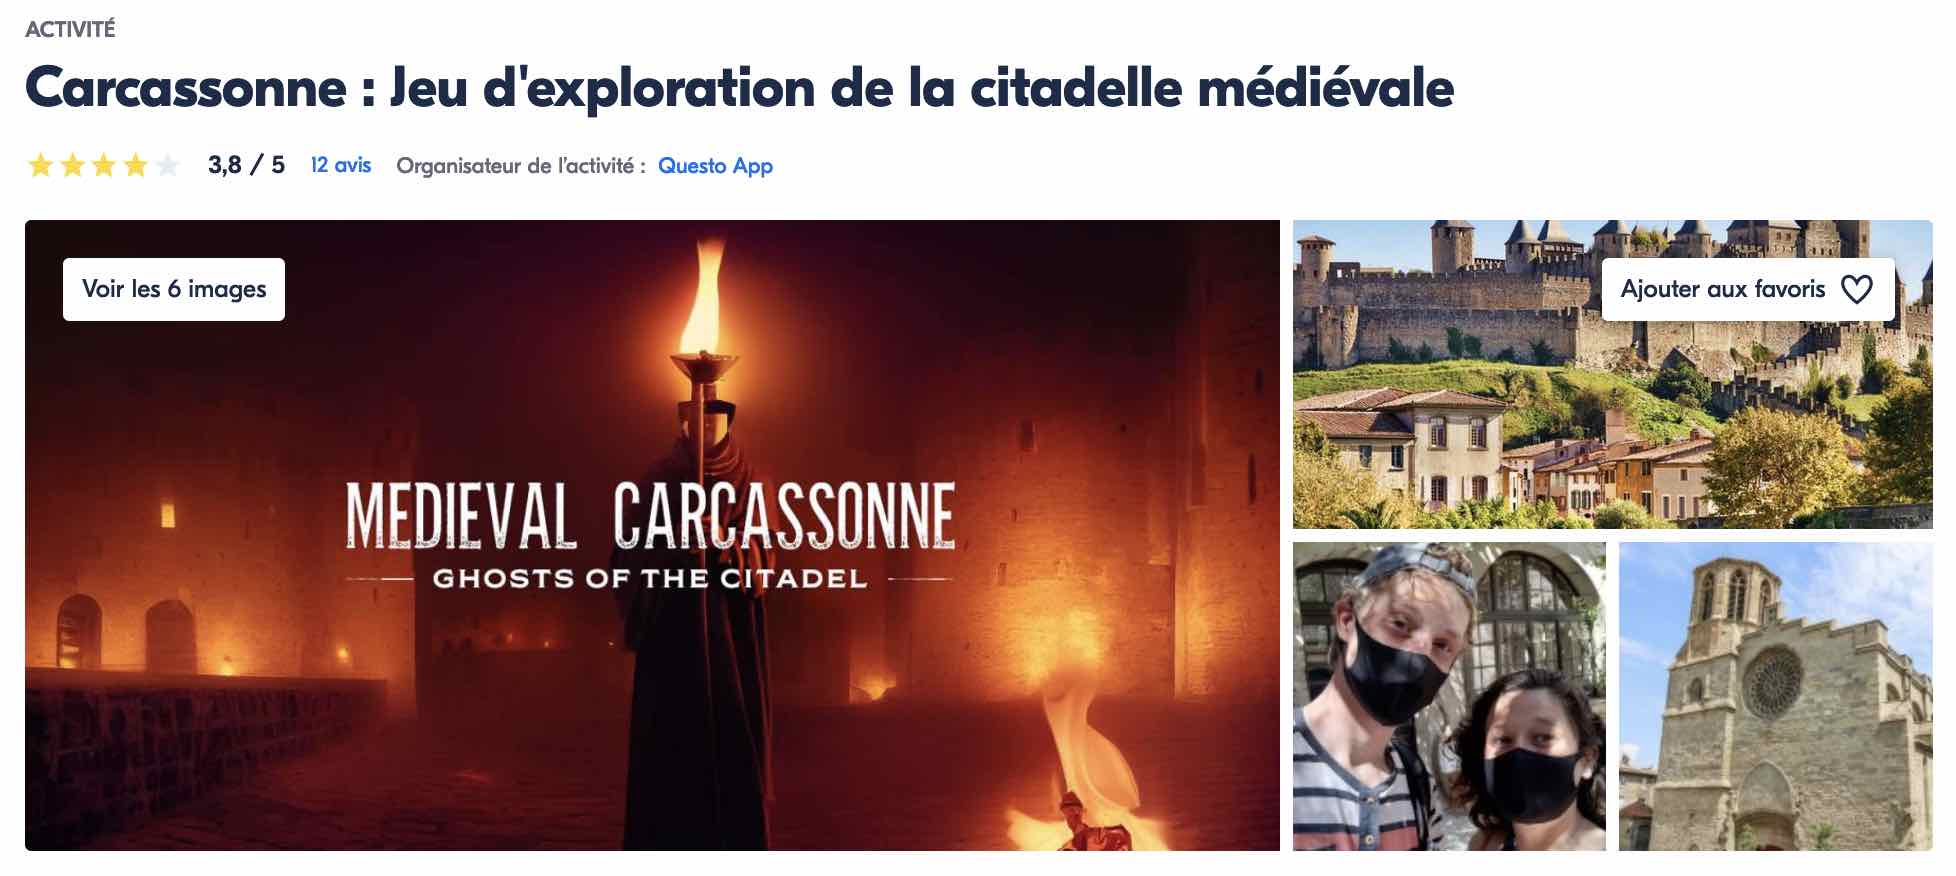 visiter-carcassonne-jeu-exploration-cite-medievale